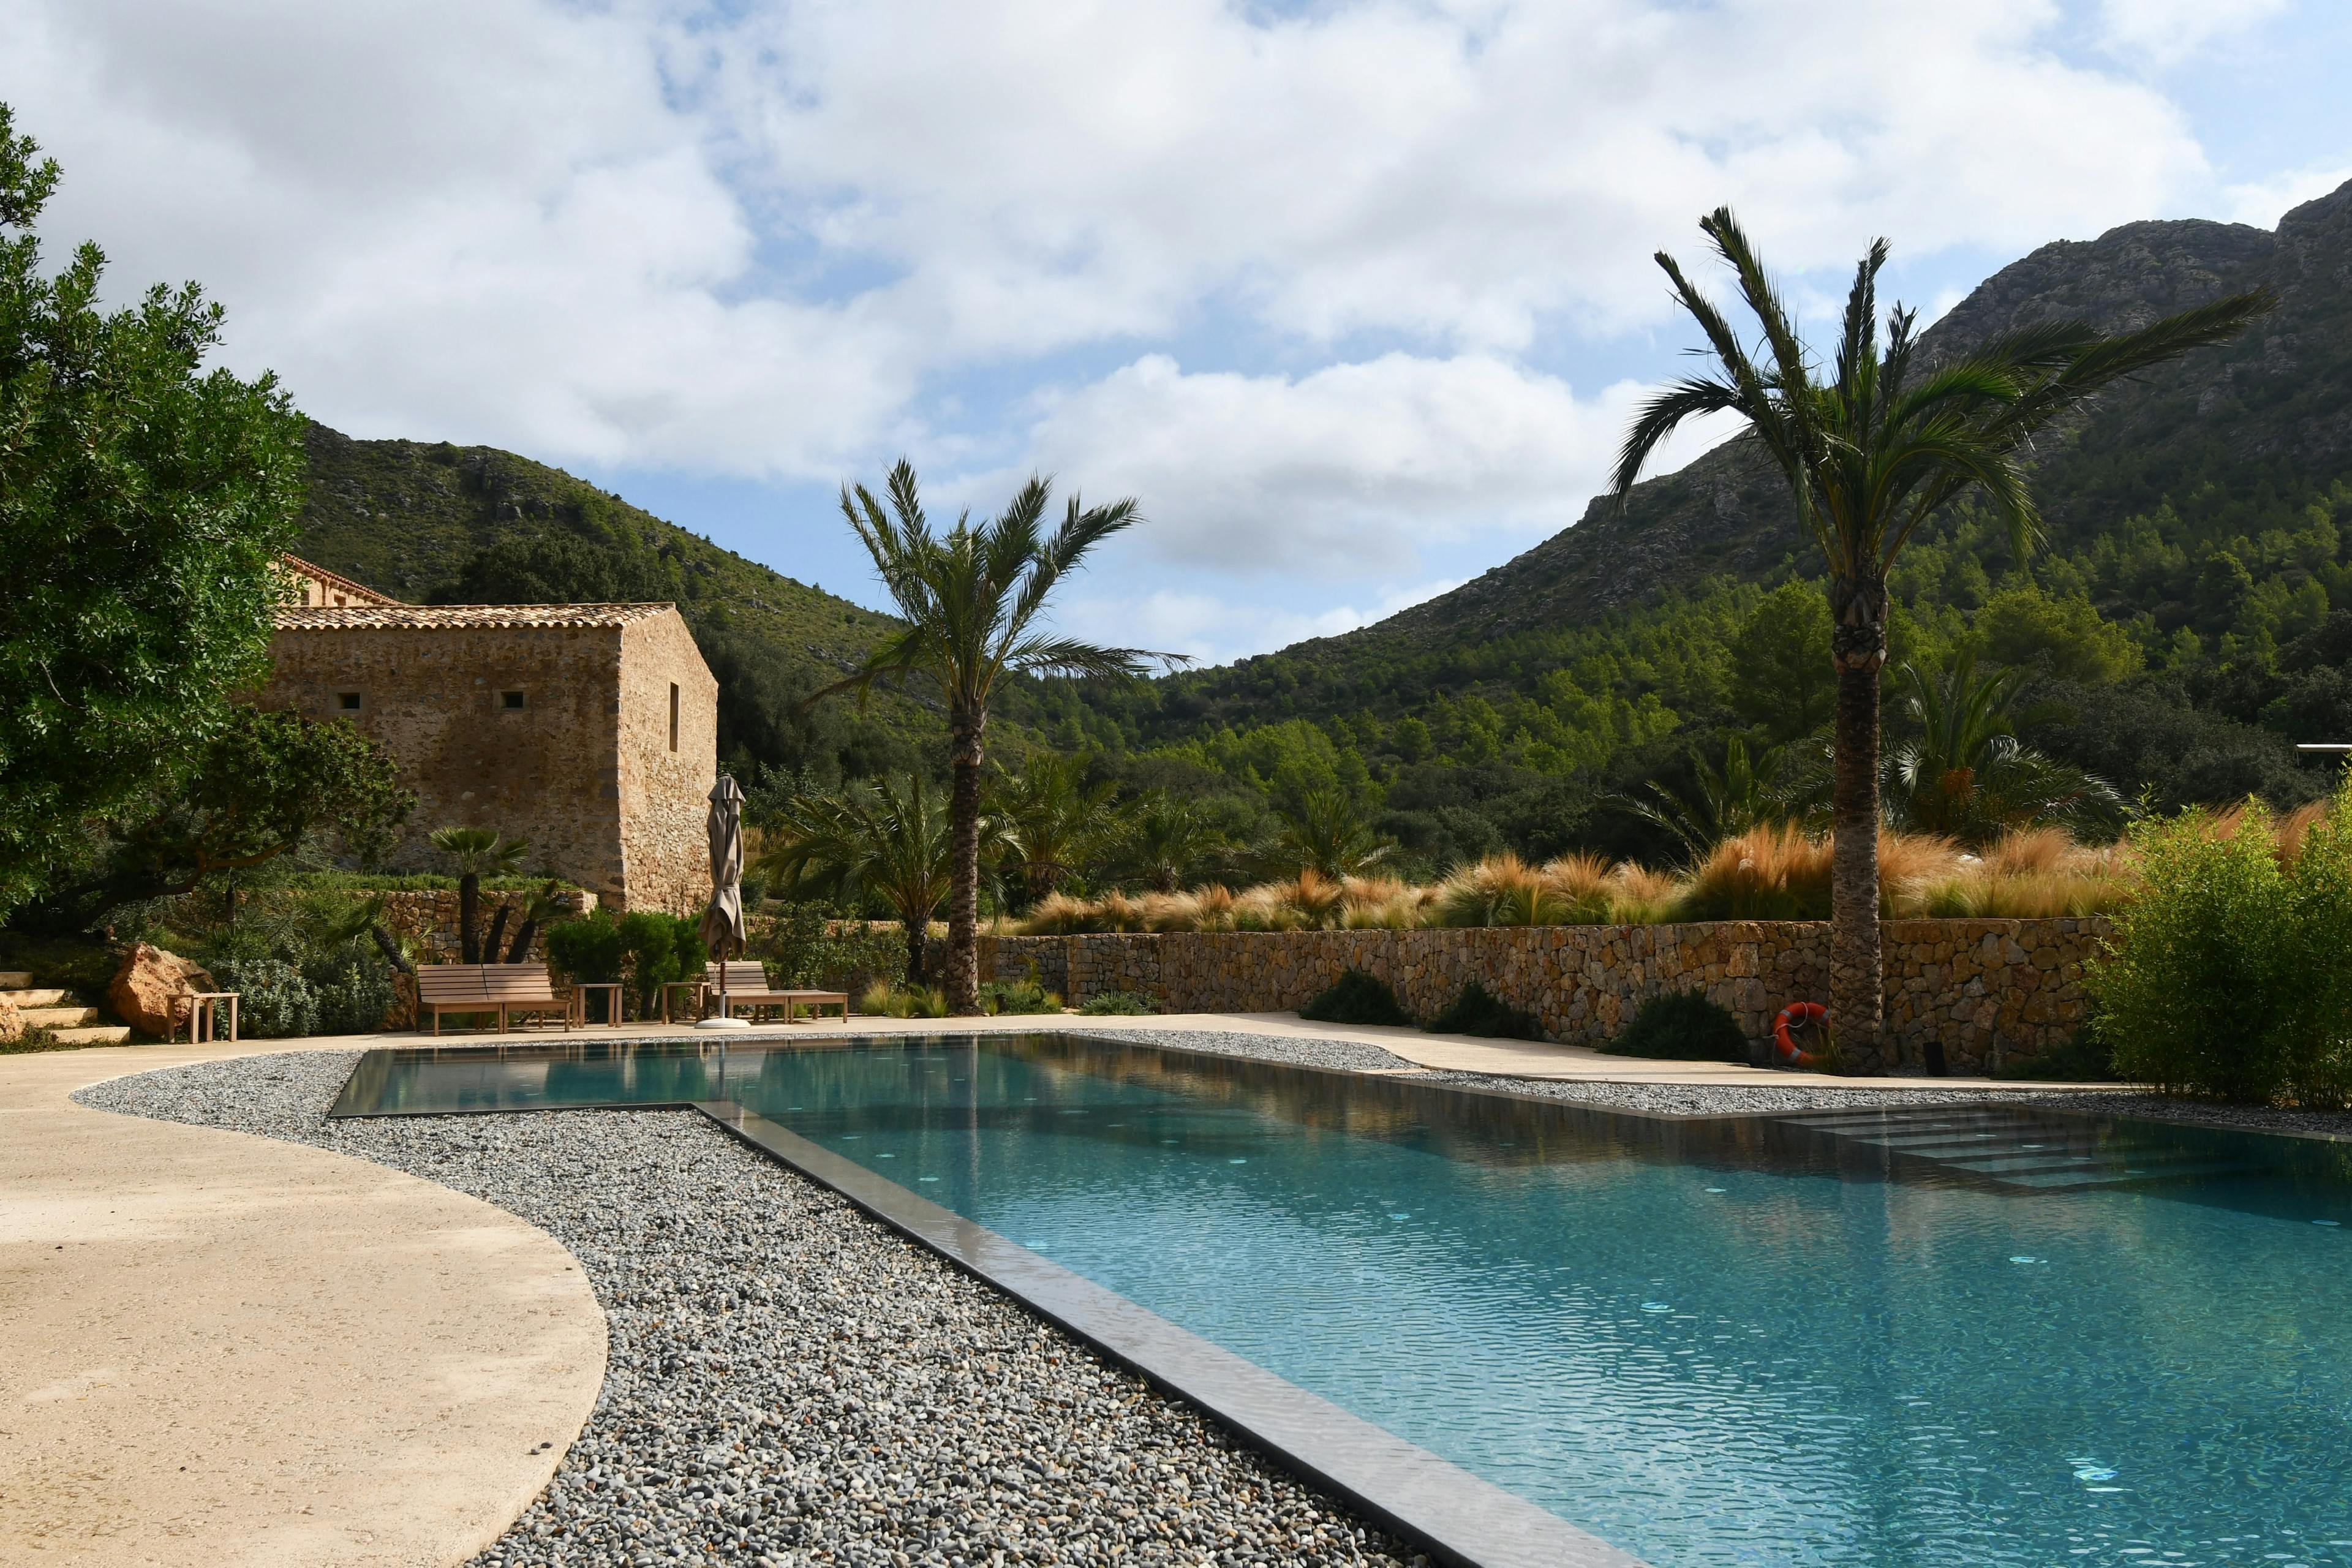 Mediterrane Stein-Terrasse mit eingelassenen Pool. Umgeben vom Grün der Berge, einer kleinen Steinmauer und 2 eigenen Palmen.